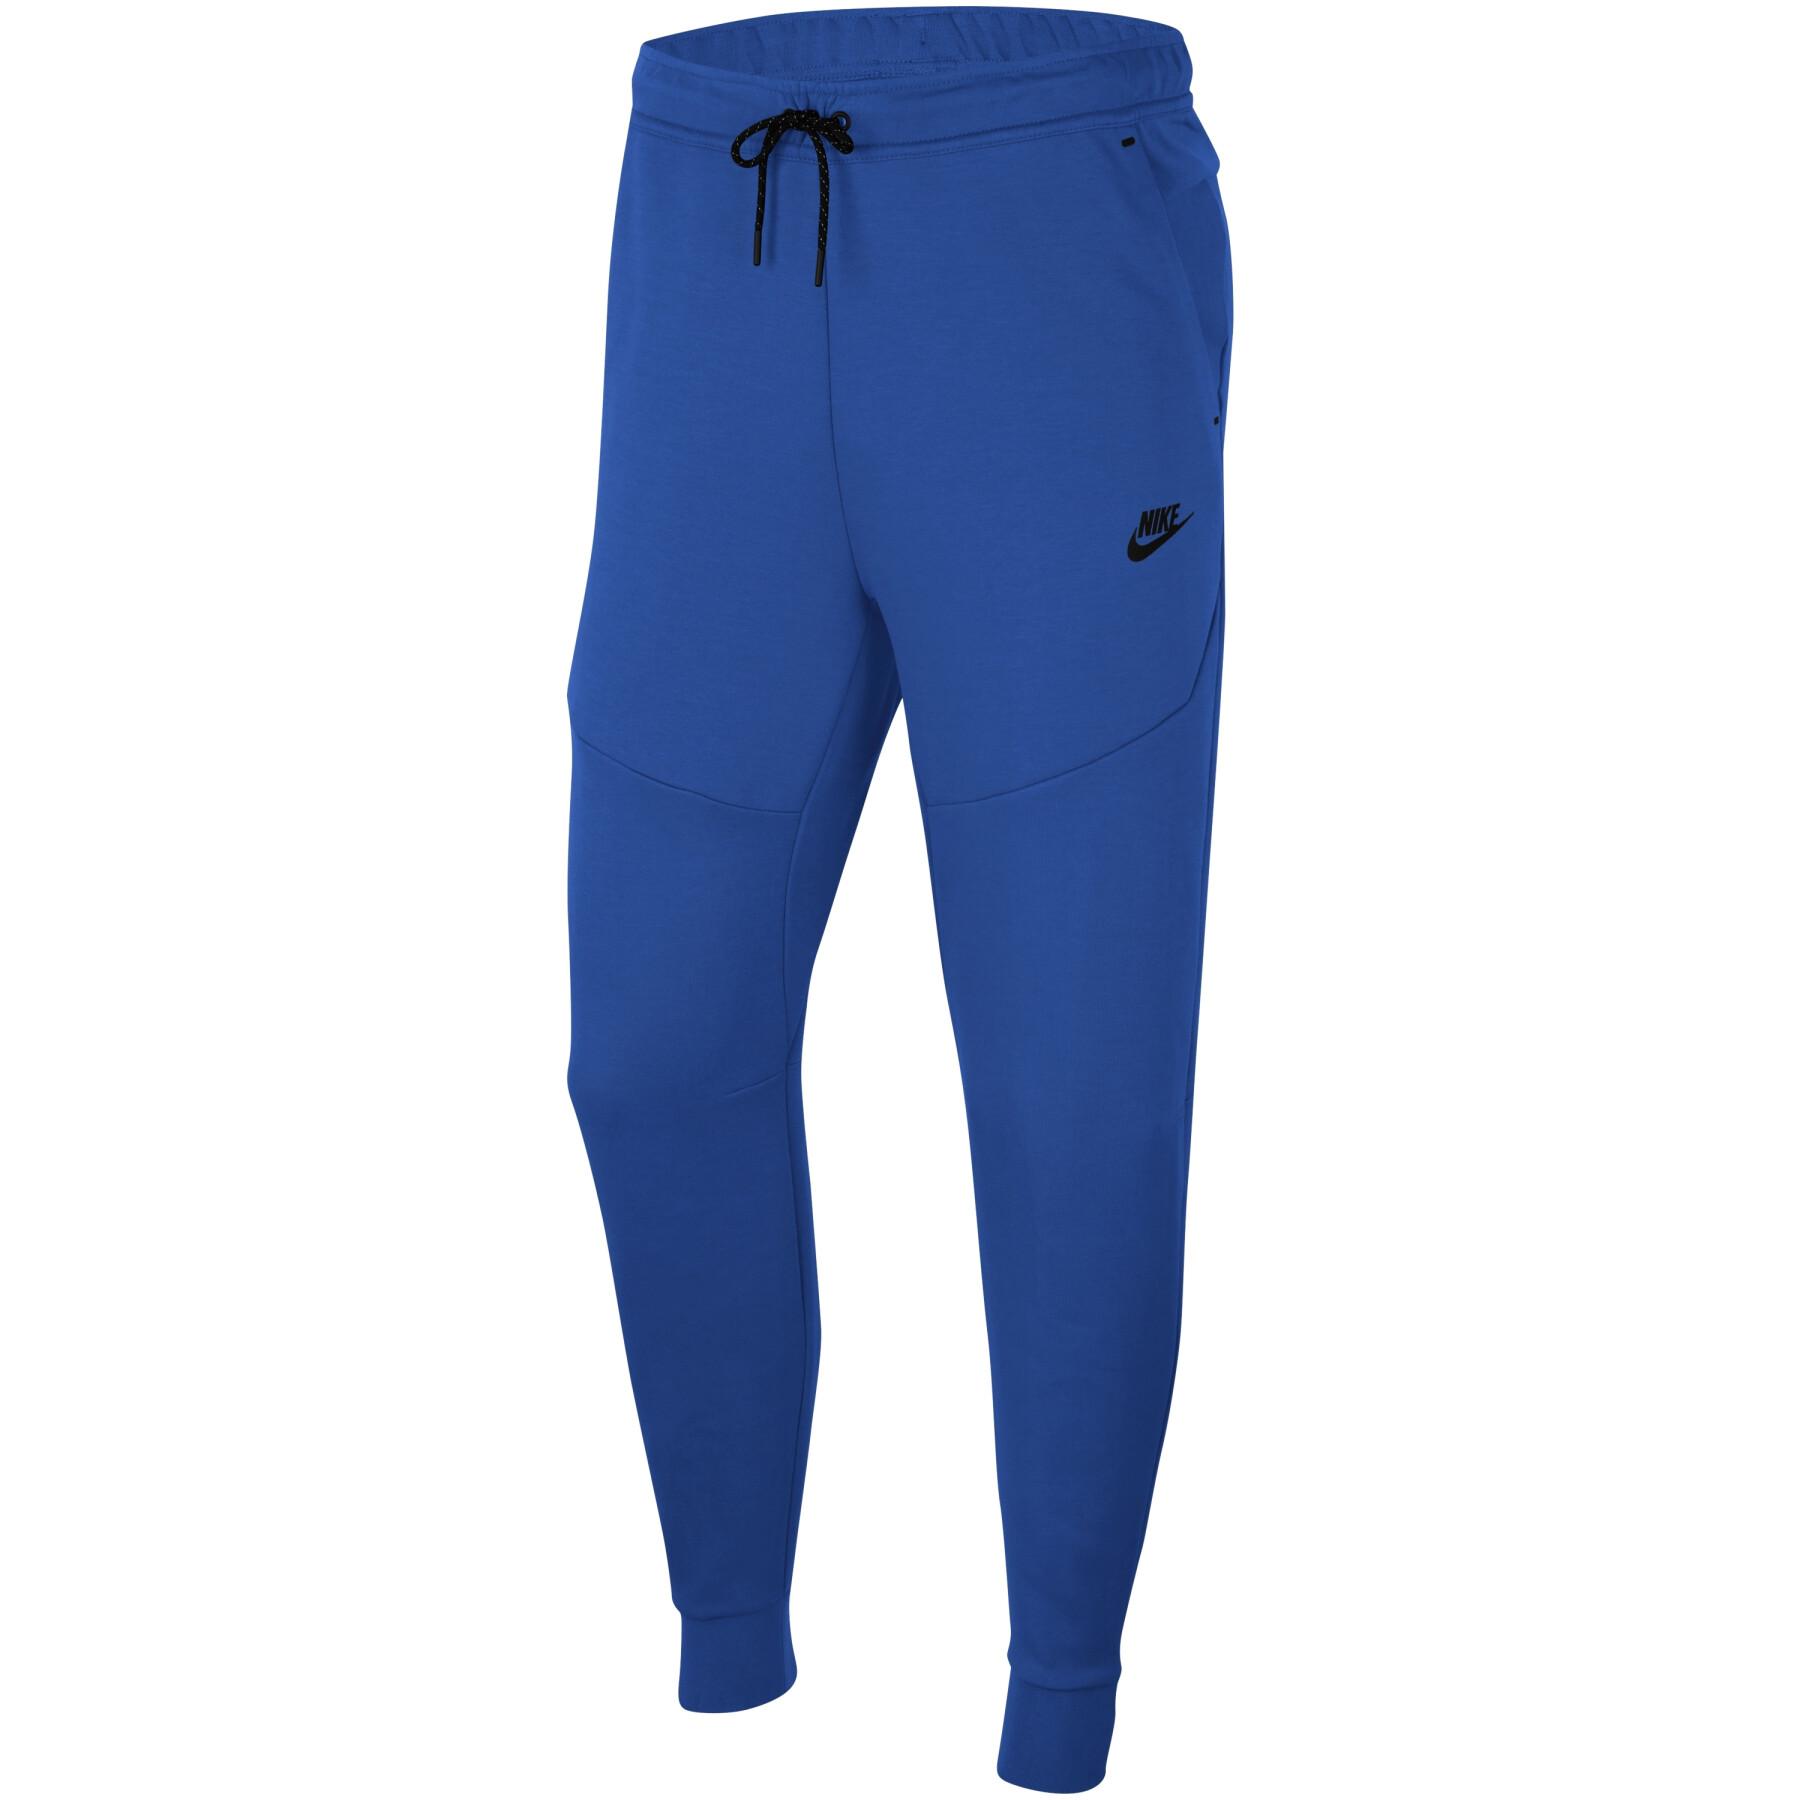 Siatkowy strój do joggingu Nike Sportswear Tech